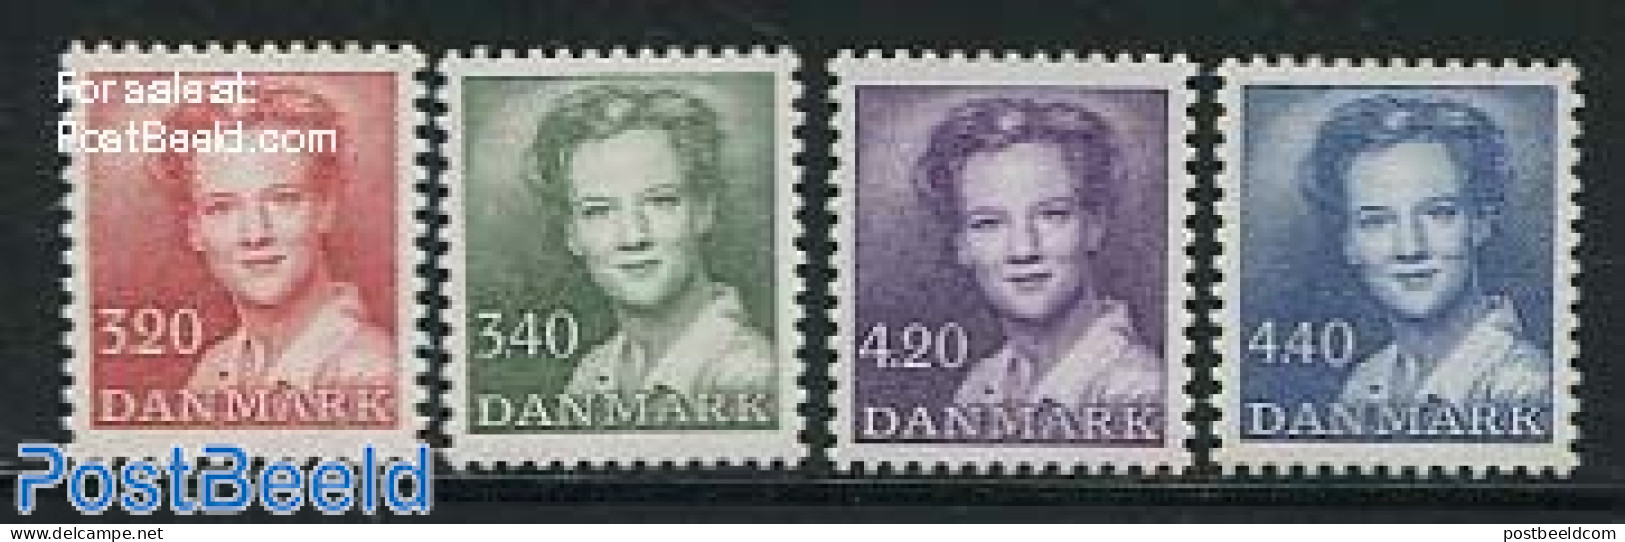 Denmark 1989 Definitives 4v, Mint NH - Unused Stamps